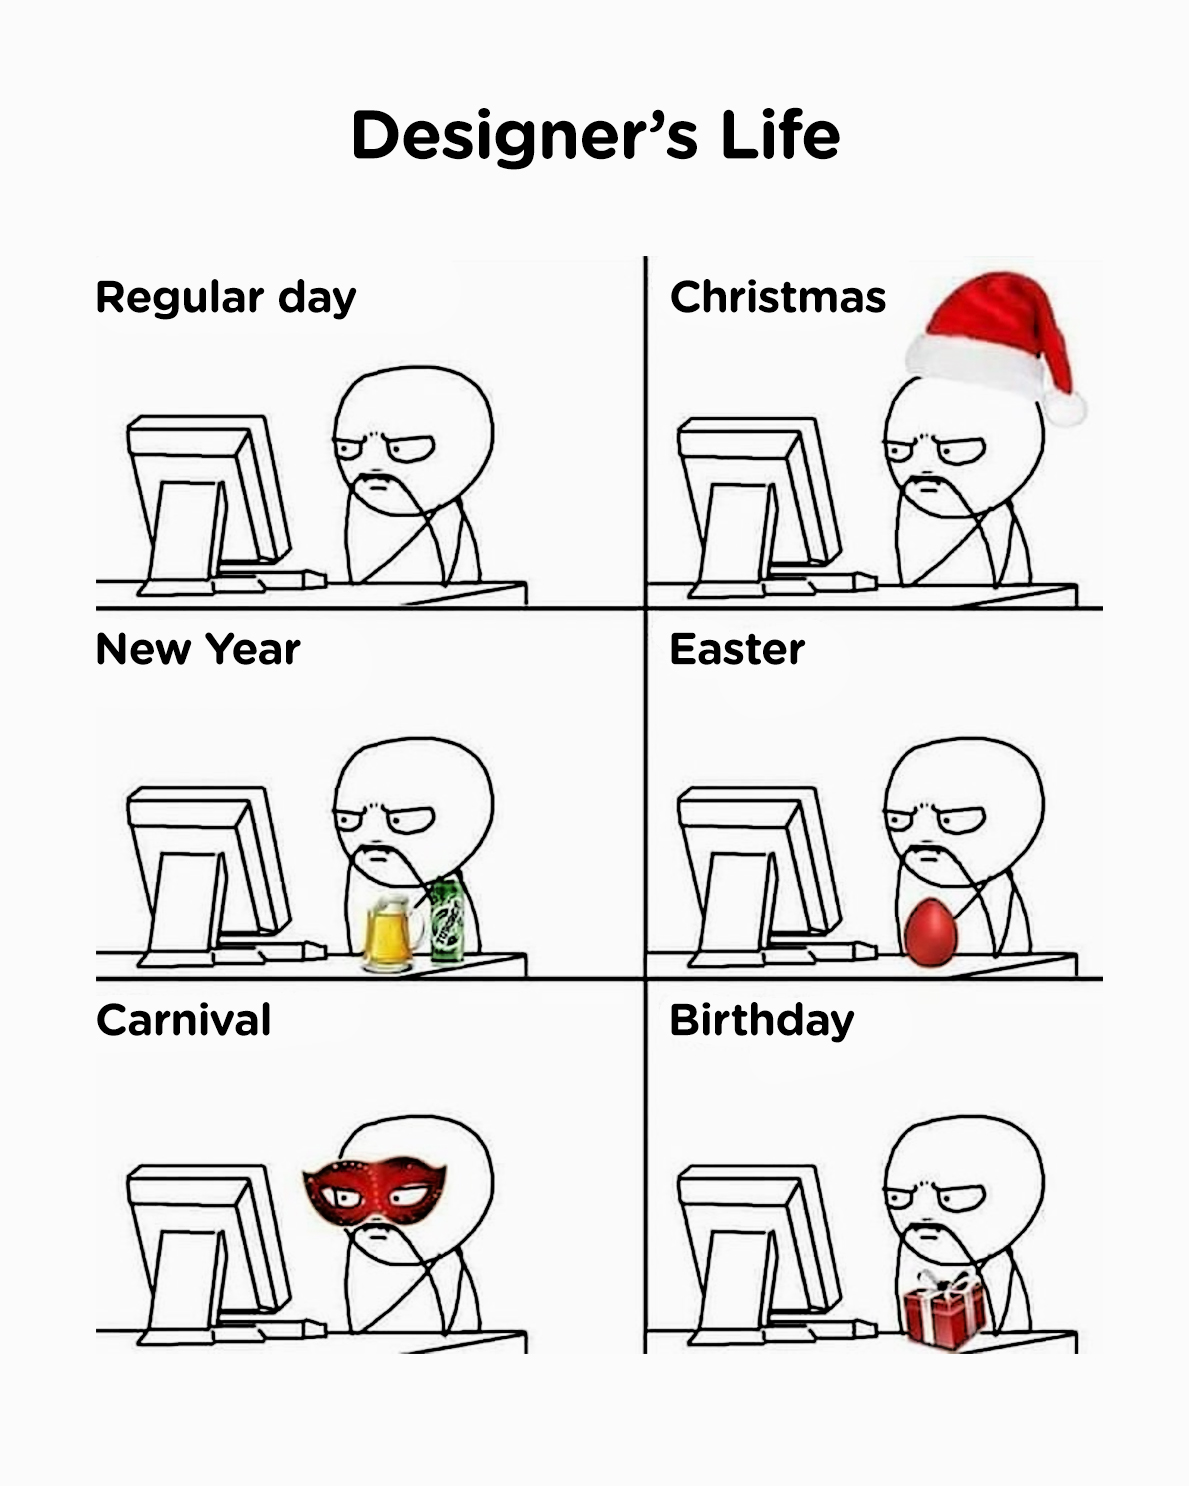 Designer's Life: Regular Day, Christmas, New Year, Easter, Carnival, Birthday